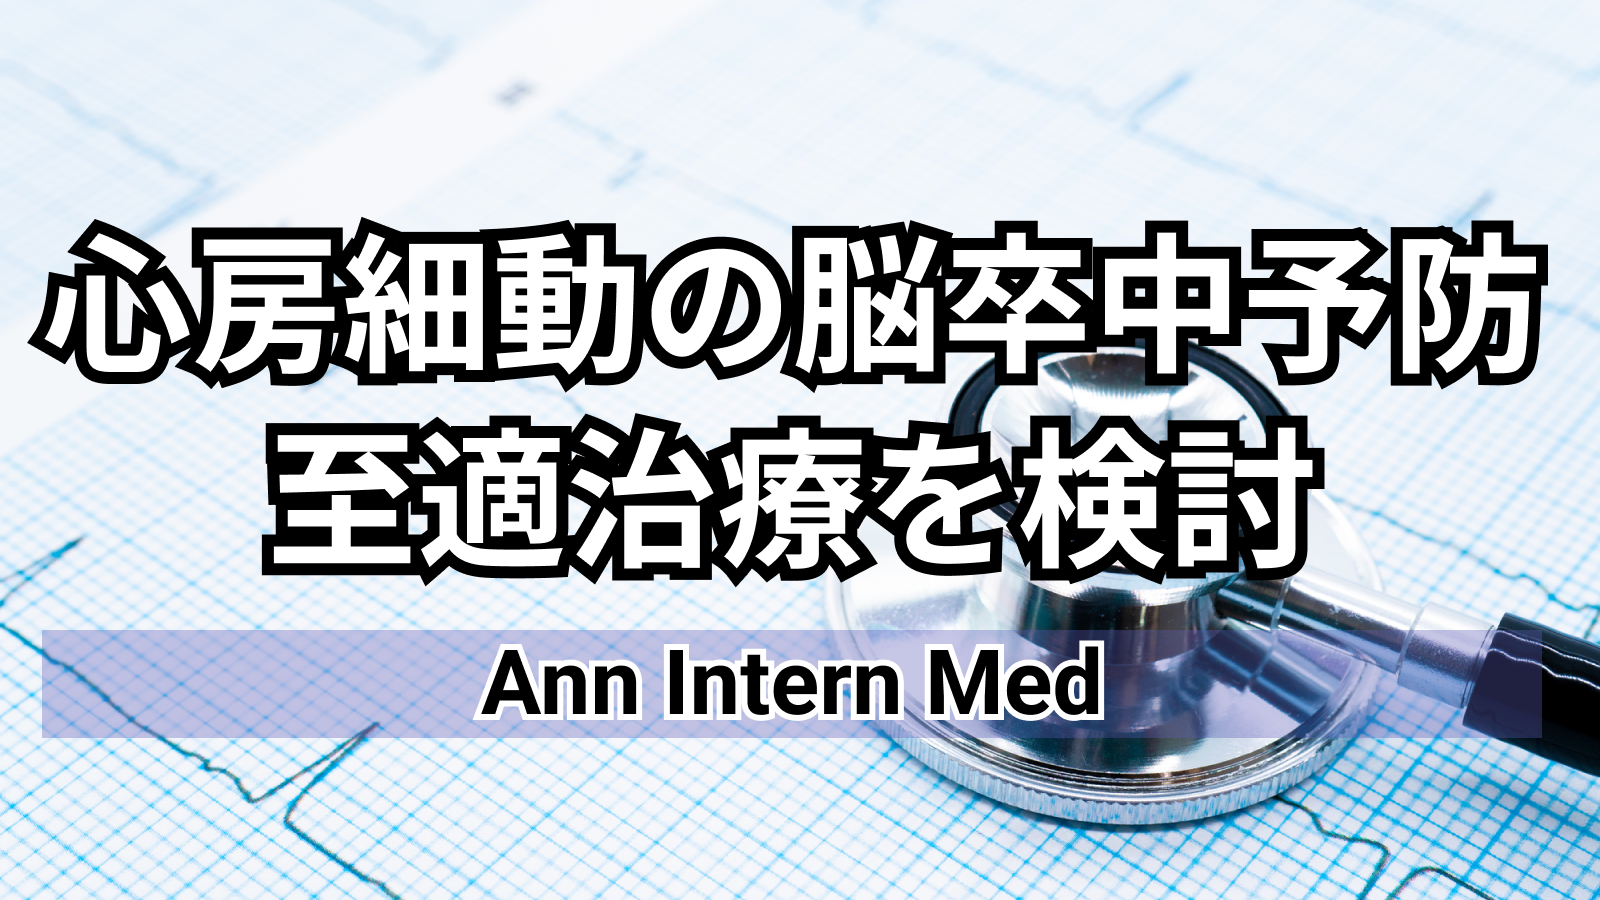 【Ann Intern Med】AF患者への左心耳閉鎖術 =脳梗塞および出血リスクの程度で有益性に差あり